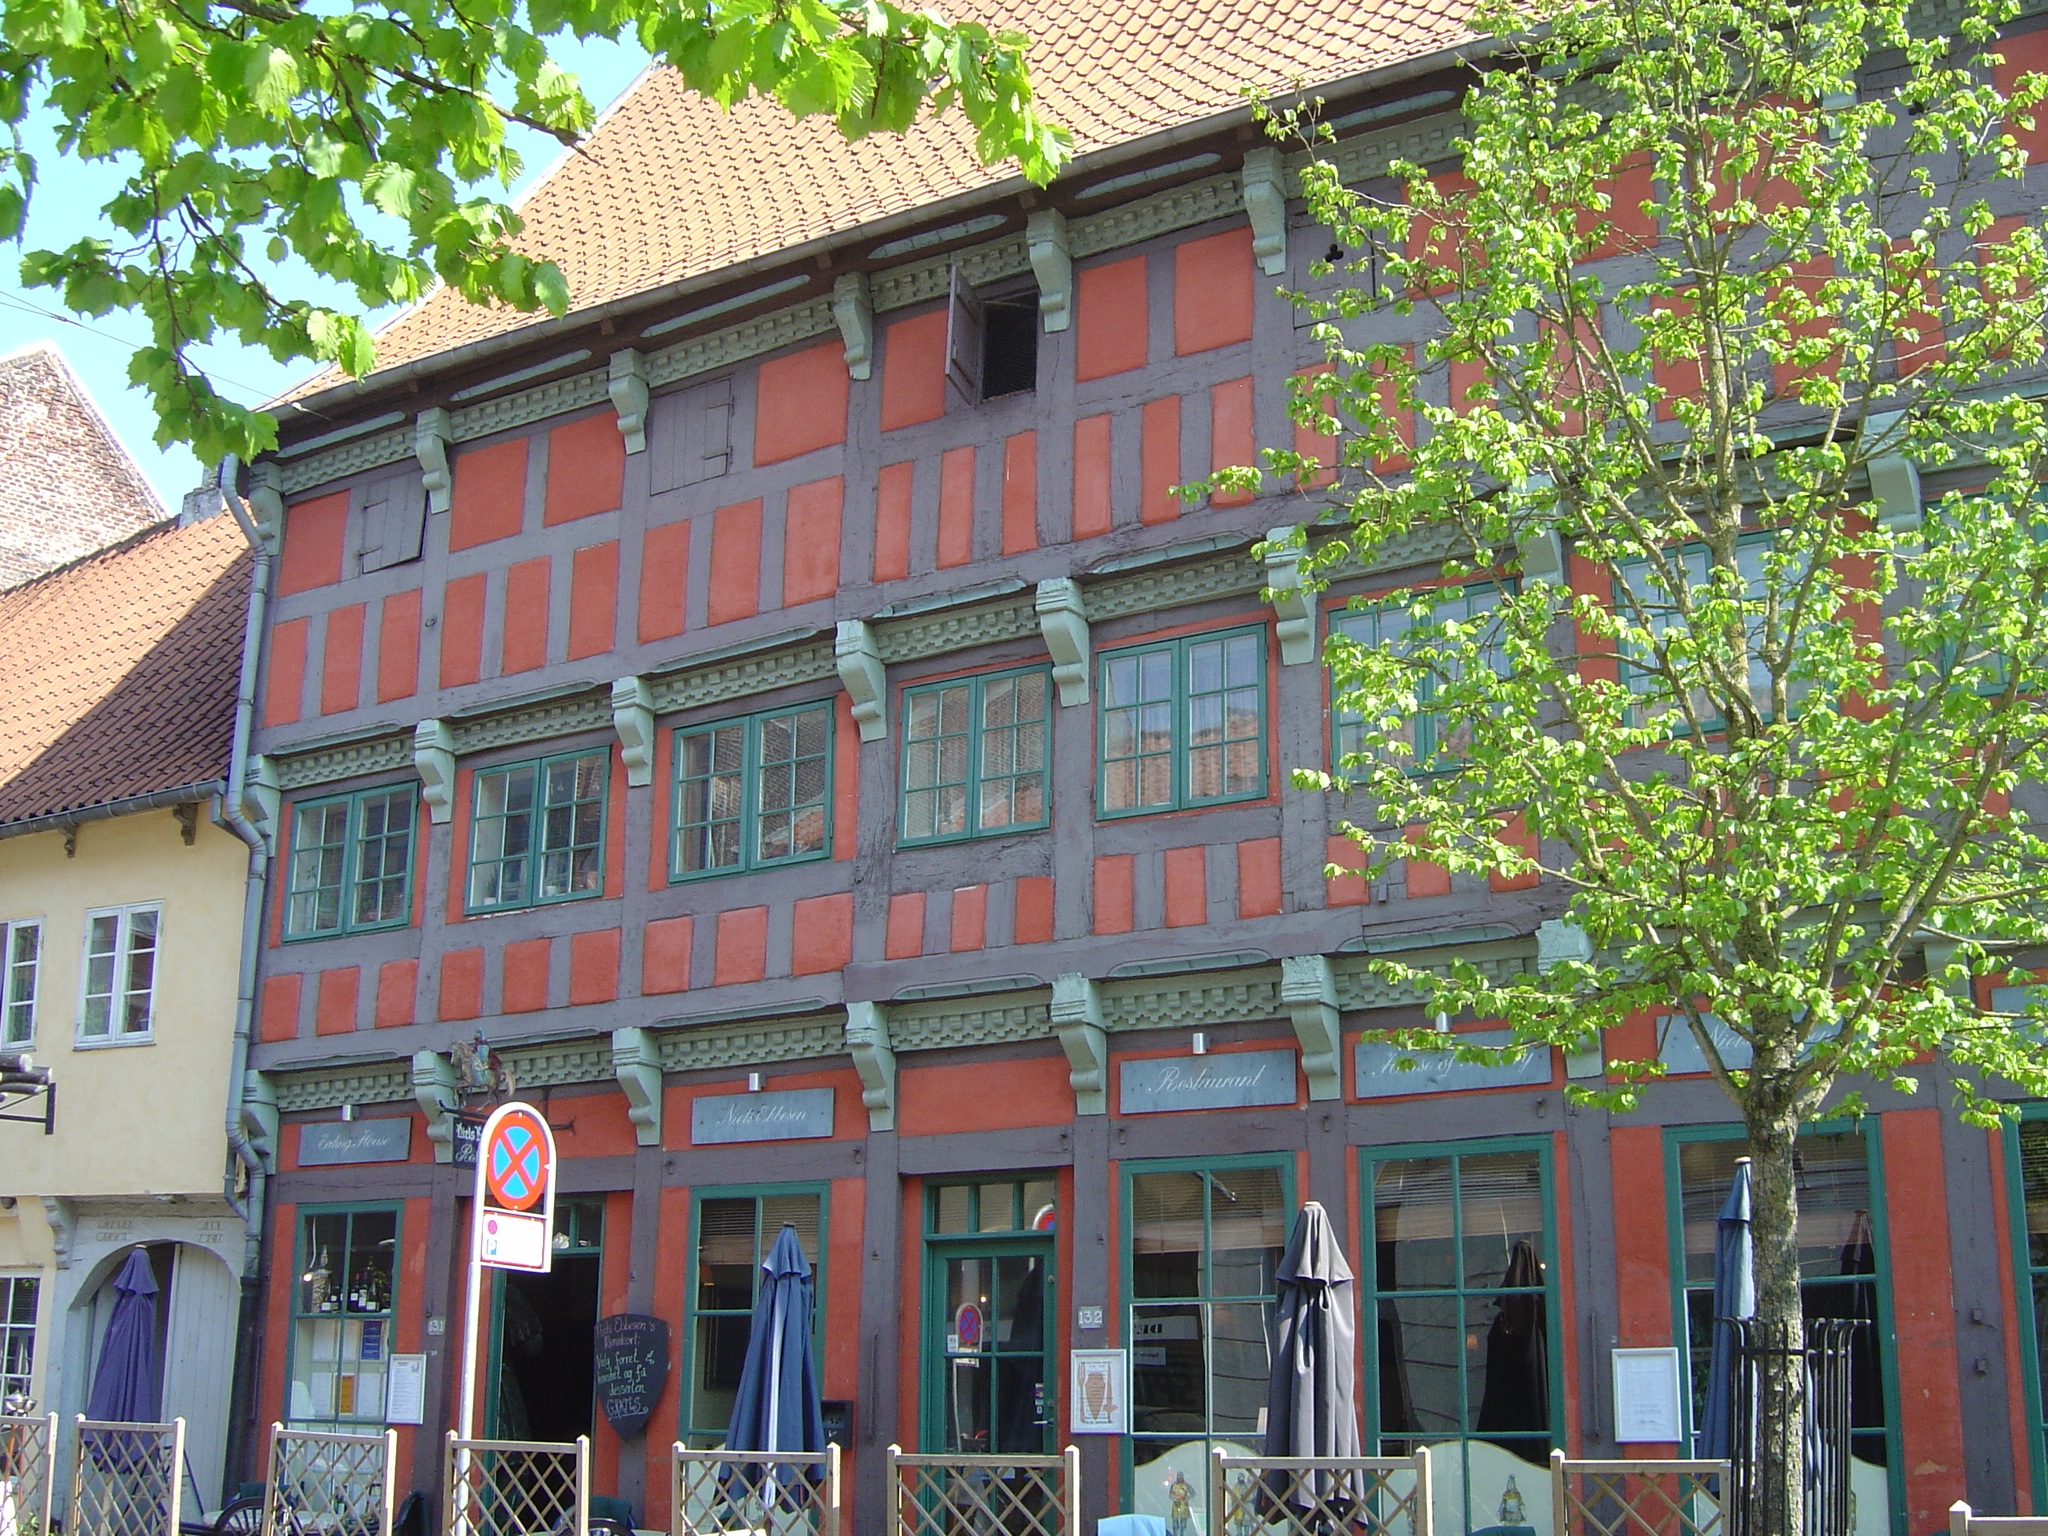 Niels Ebbesens hus i Randers – som er bygget længe efter Niels Ebbesens tid